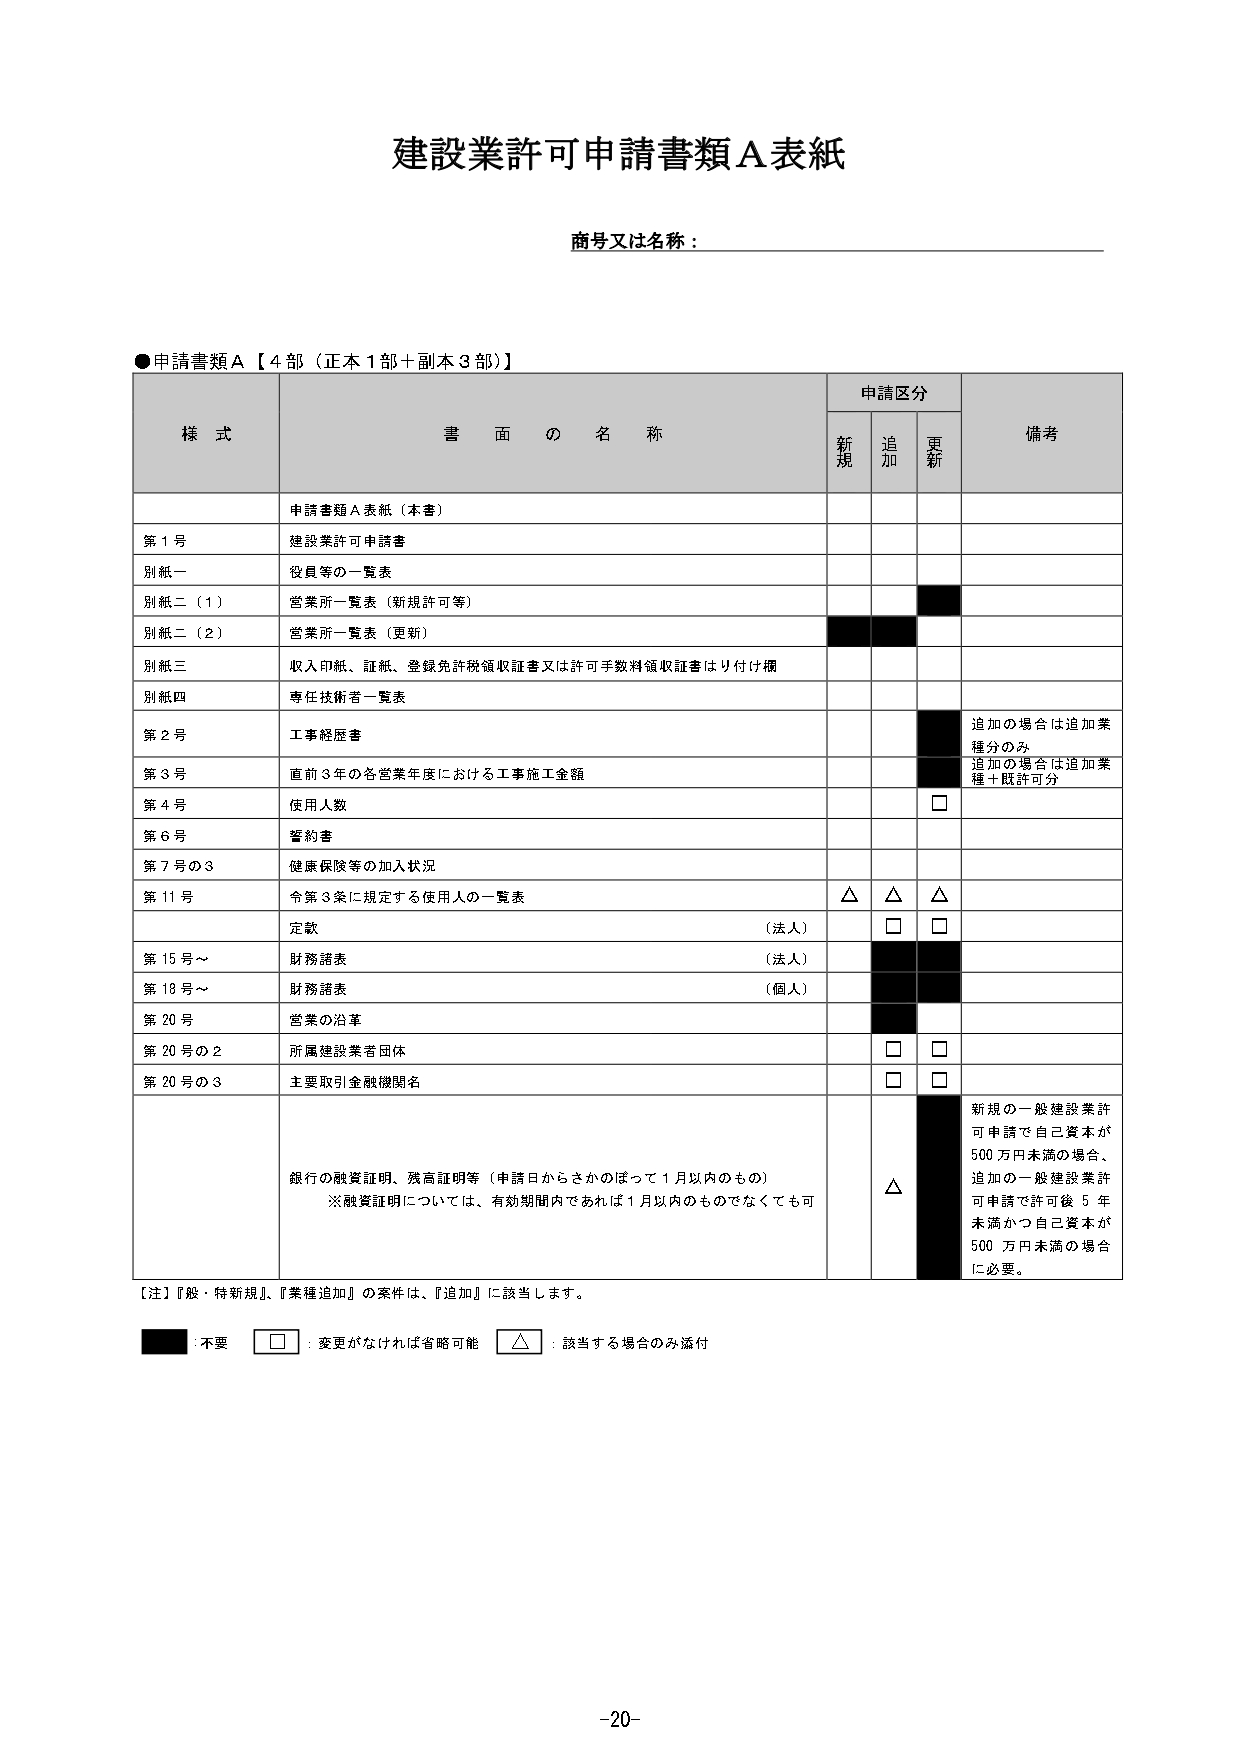 鳥取県の建設業許可書類2